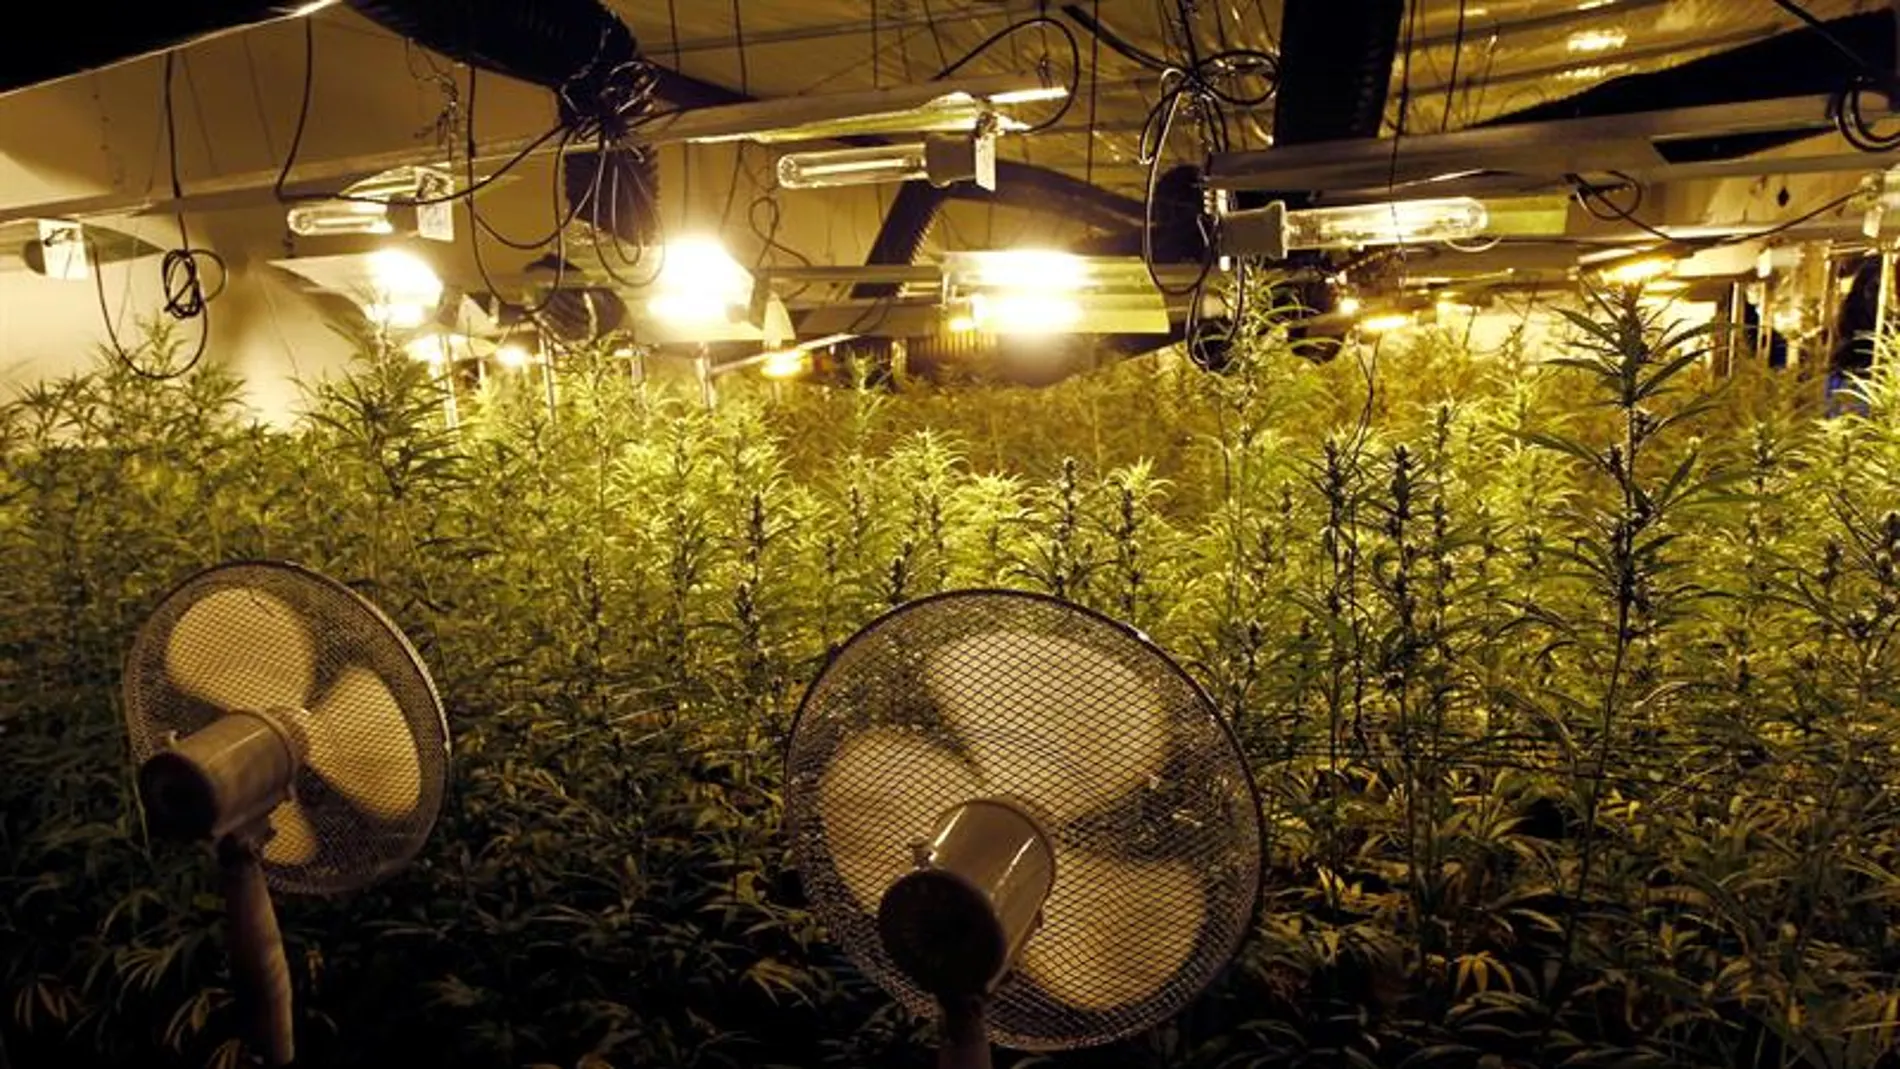 Plantas de marihuana en el interior del invernadero intervenido por la Guardia Civil en Galicia